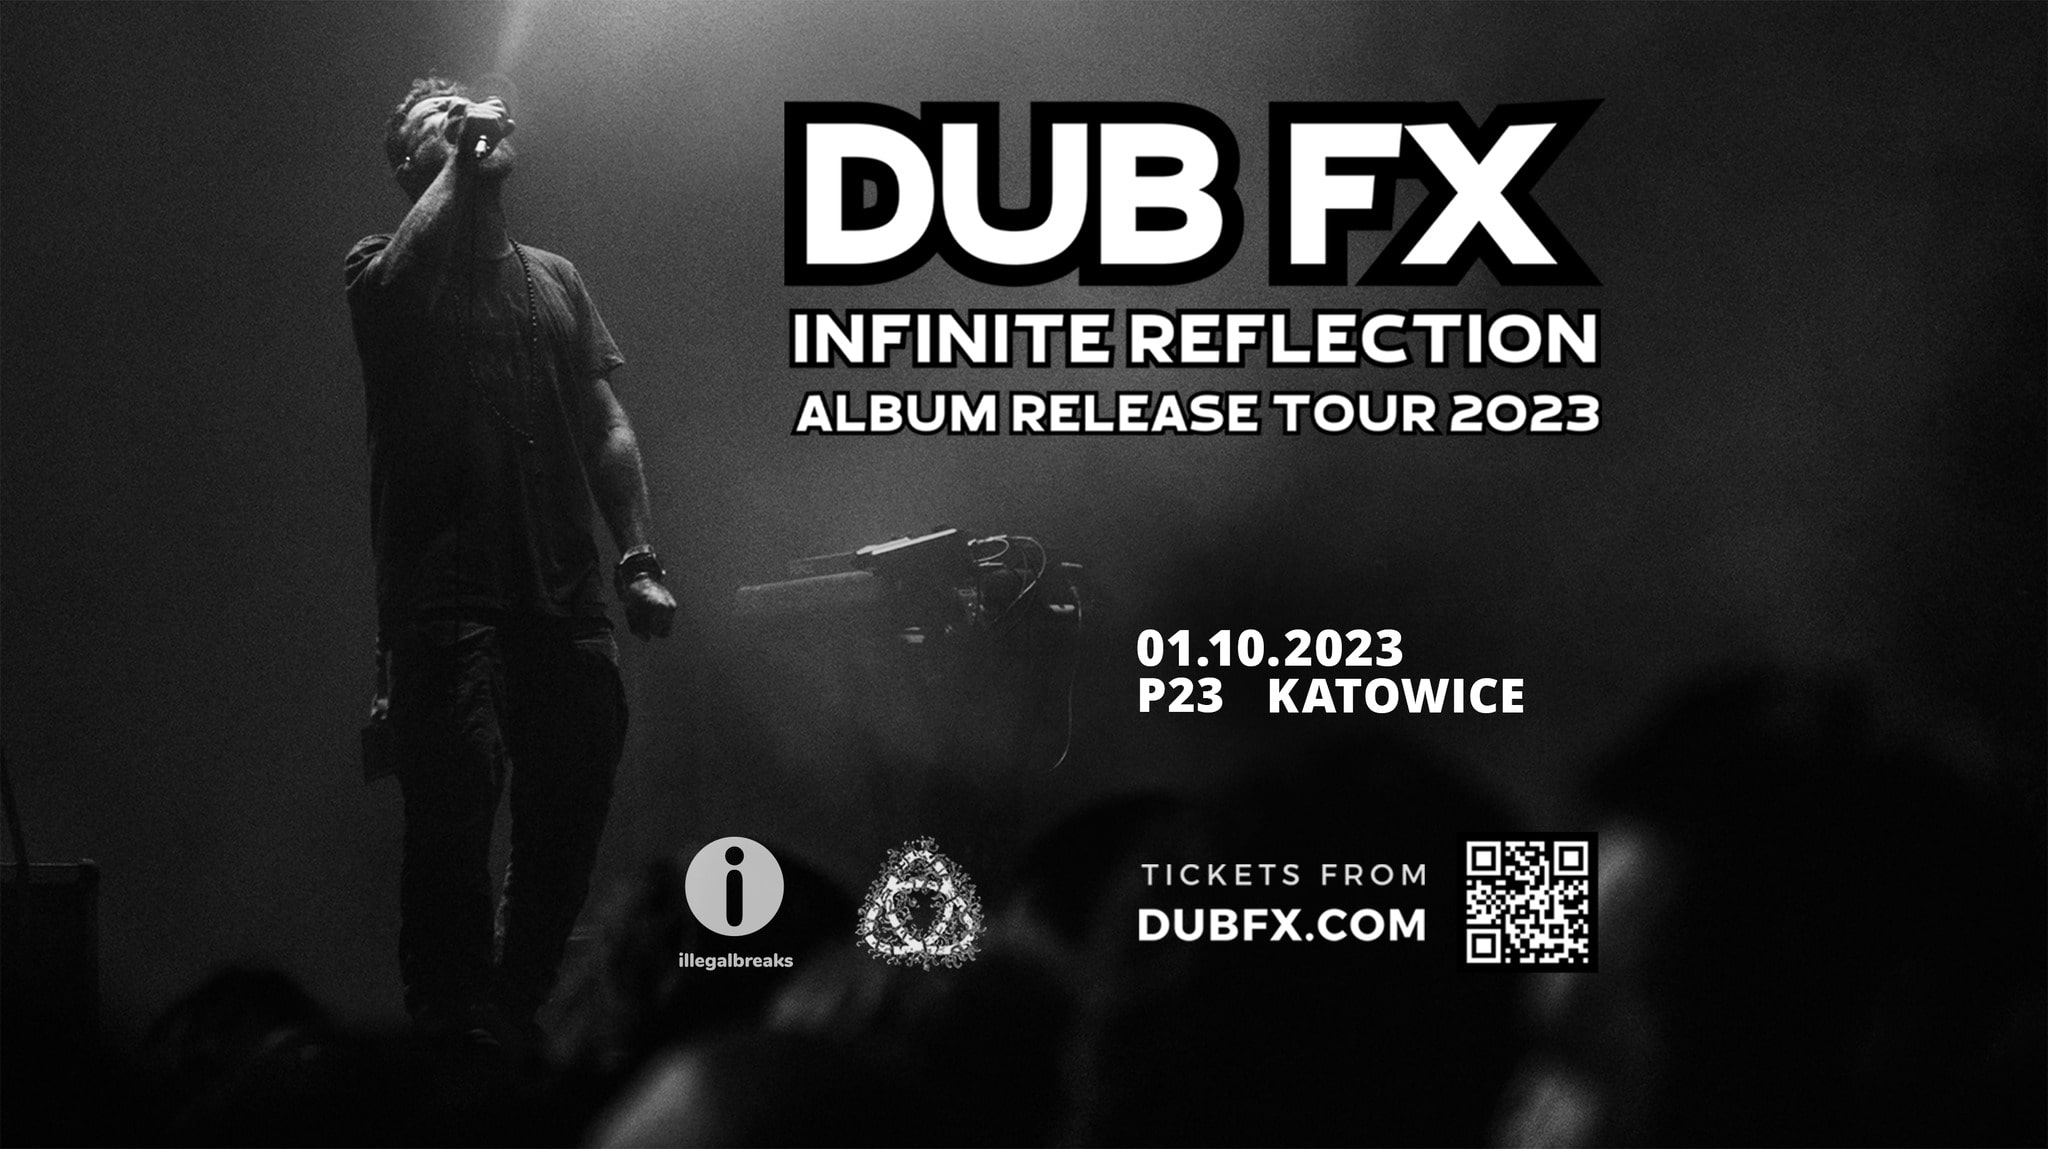 DUB FX INFINITE REFLECTION ALBUM RELEASE TOUR 2023 | KATOWICE